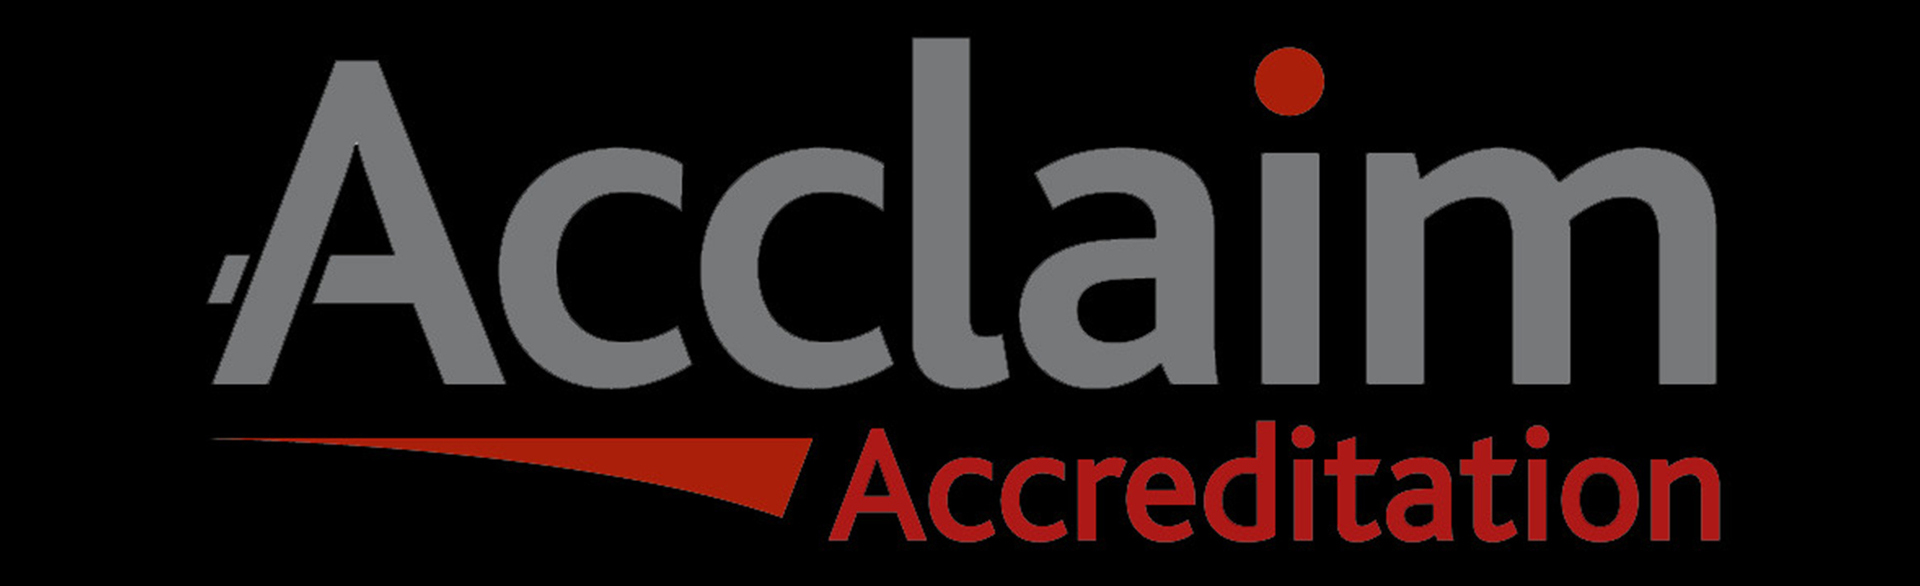 acclaim accreditation logo